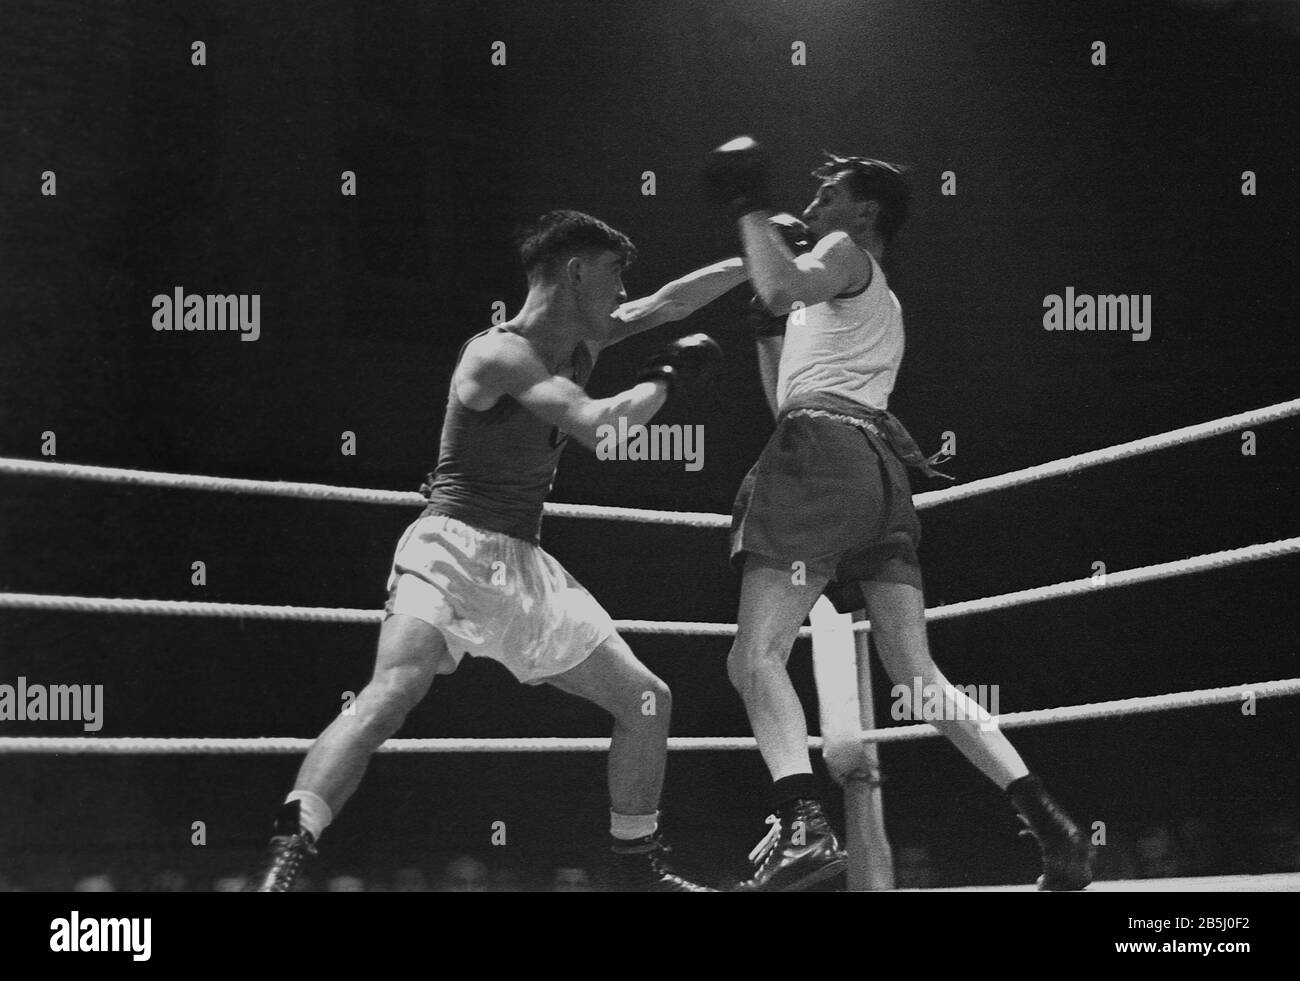 1950er Jahre, historisches Amateurboxen dieser Ära, zwei junge männliche Boxer kämpfen in einem Ring, einer wirft mit der linken Hand, ein Schlag ins Gesicht des anderen, England, Großbritannien. Stockfoto